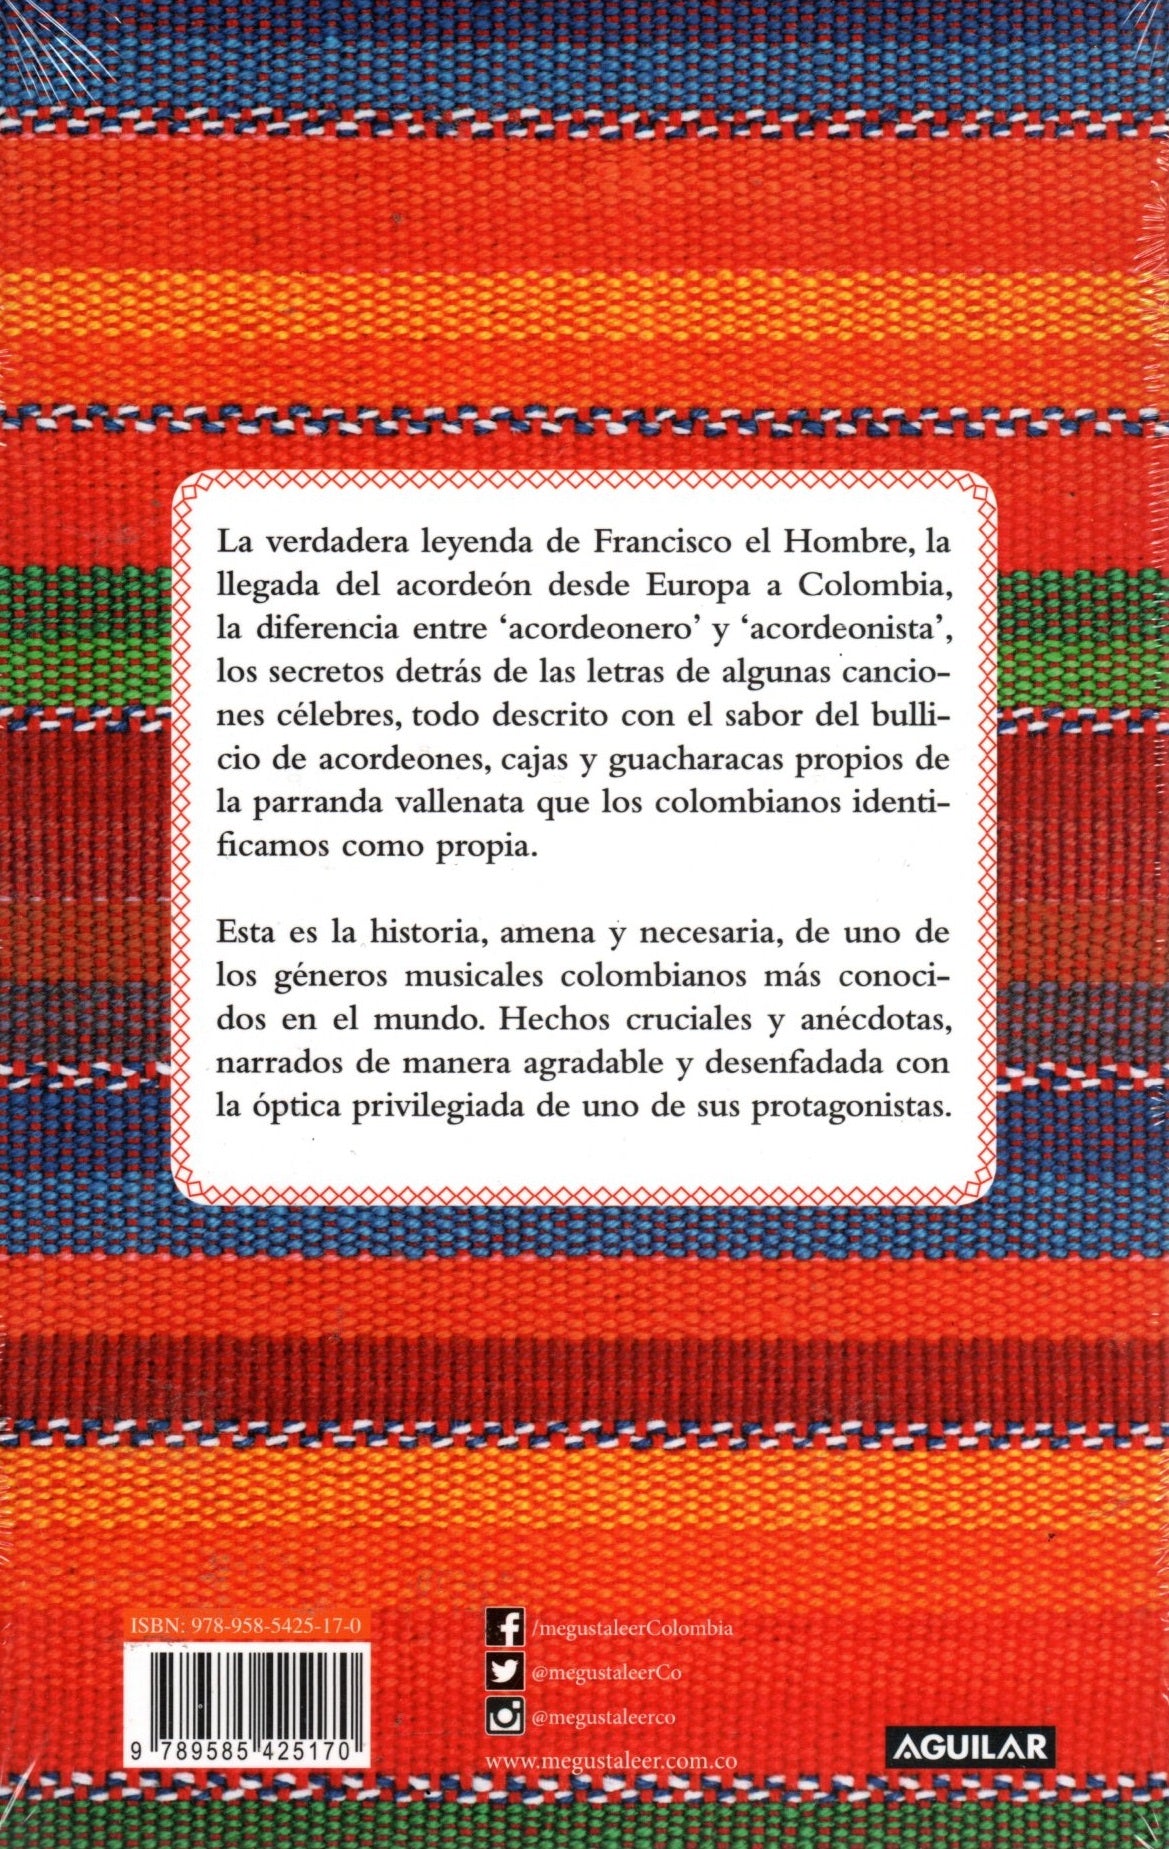 Libro Julio Oñate Martínez - Los secretos del vallenato